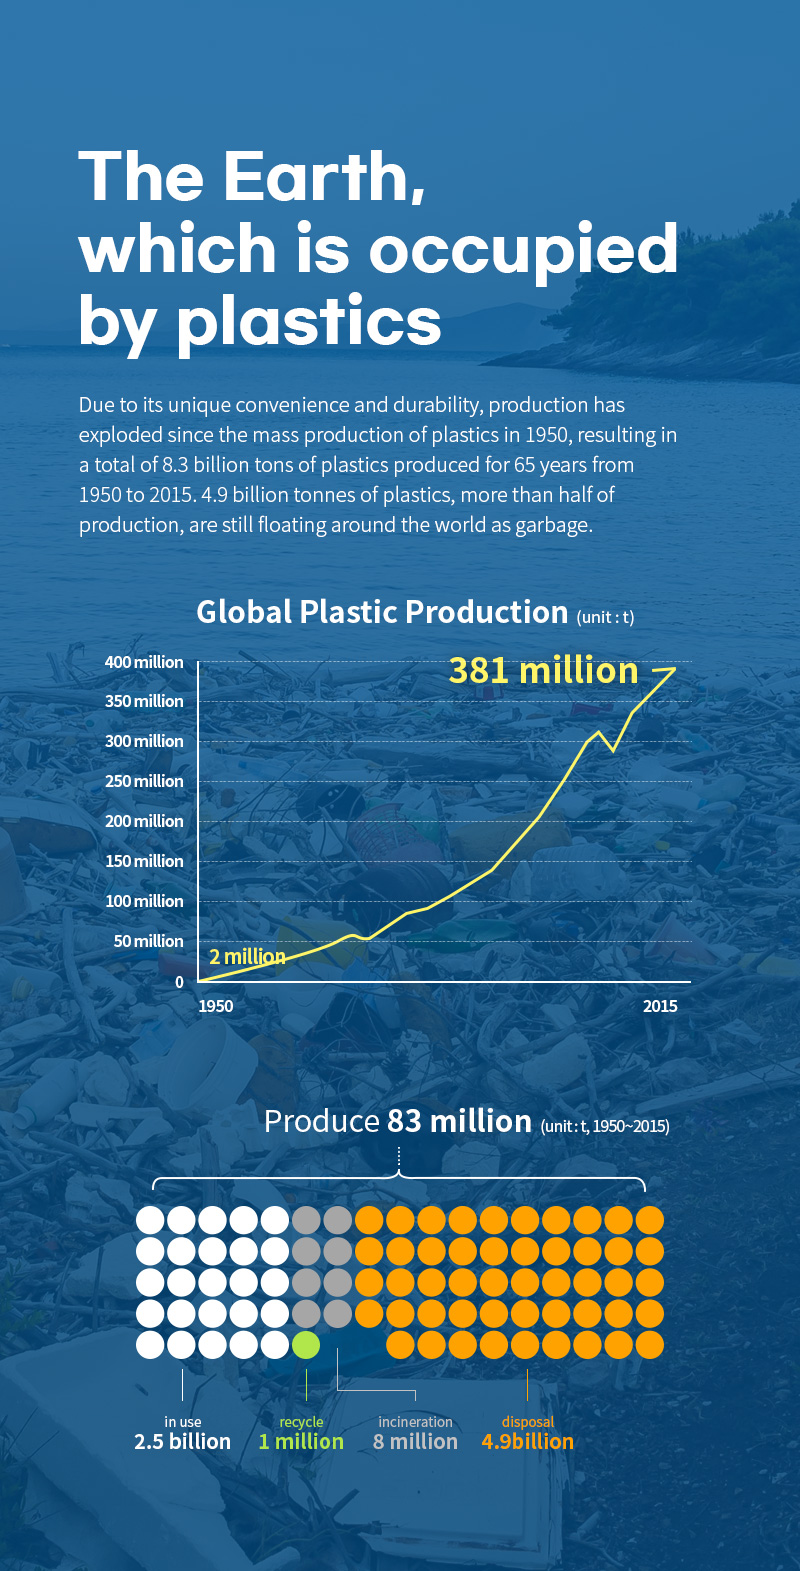 전세계 플라스틱 생산량 3억 8100만